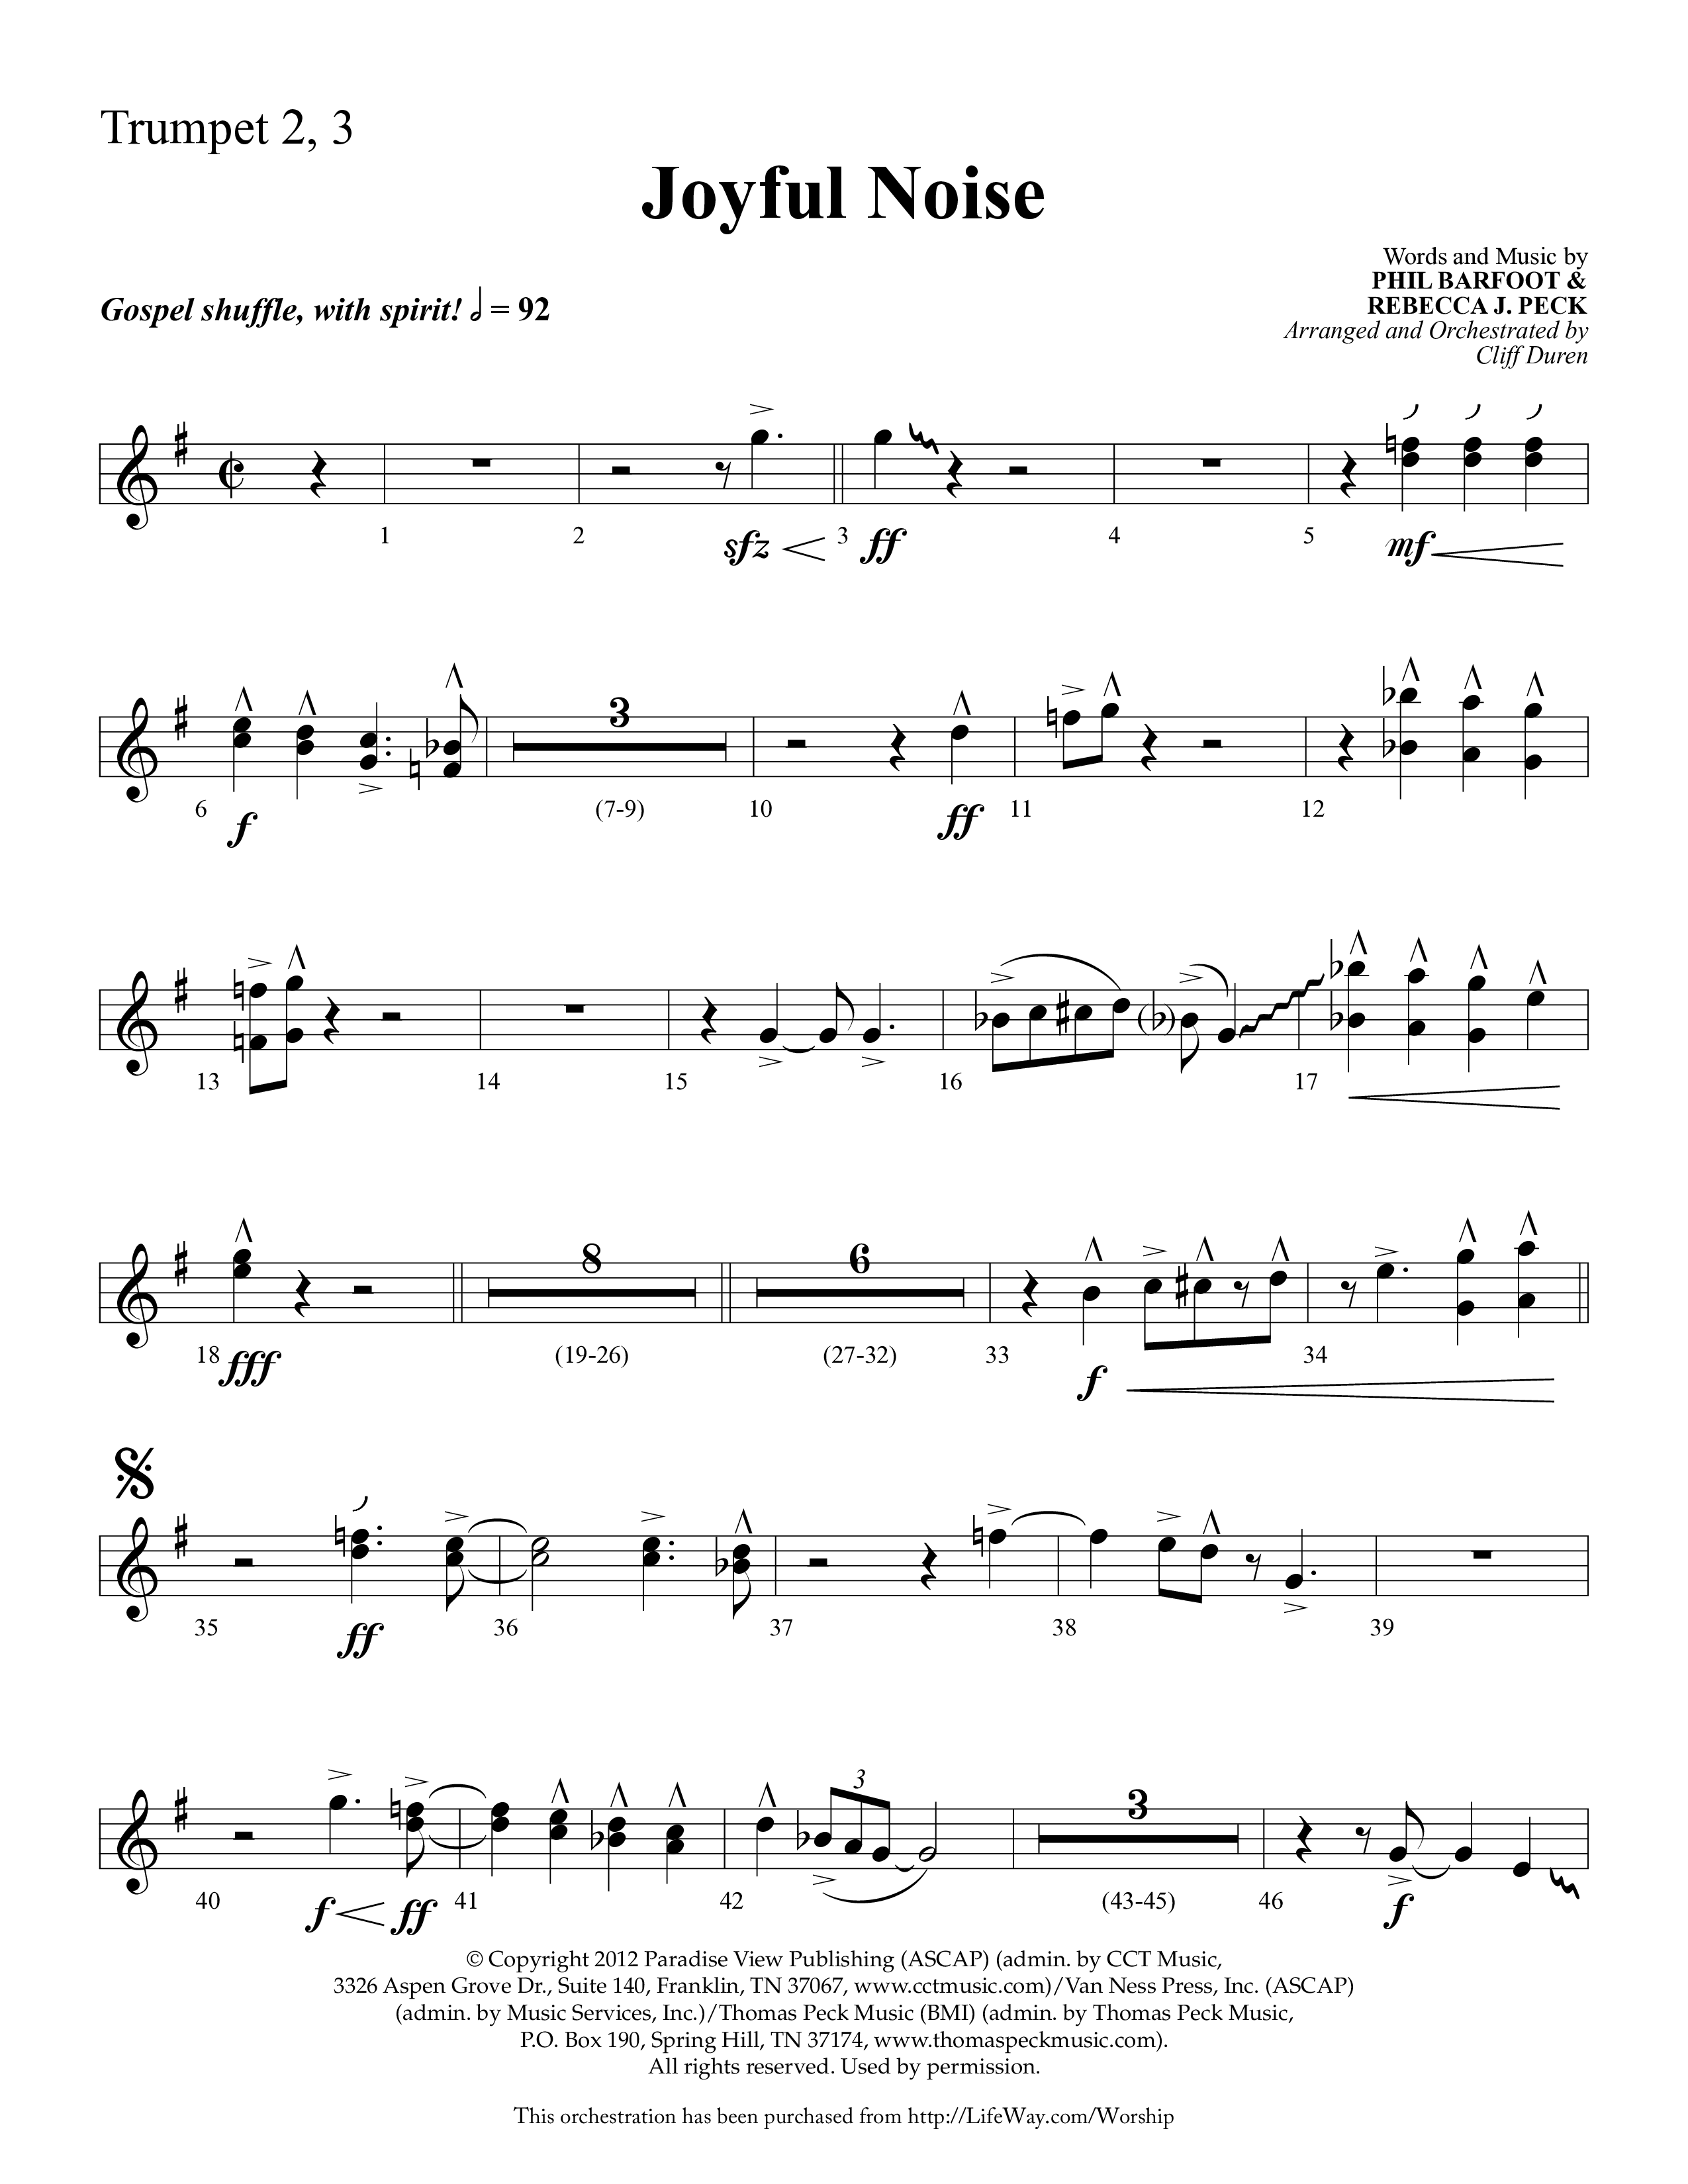 Joyful Noise (Choral Anthem SATB) Trumpet 2/3 (Lifeway Choral / Arr. Cliff Duren)